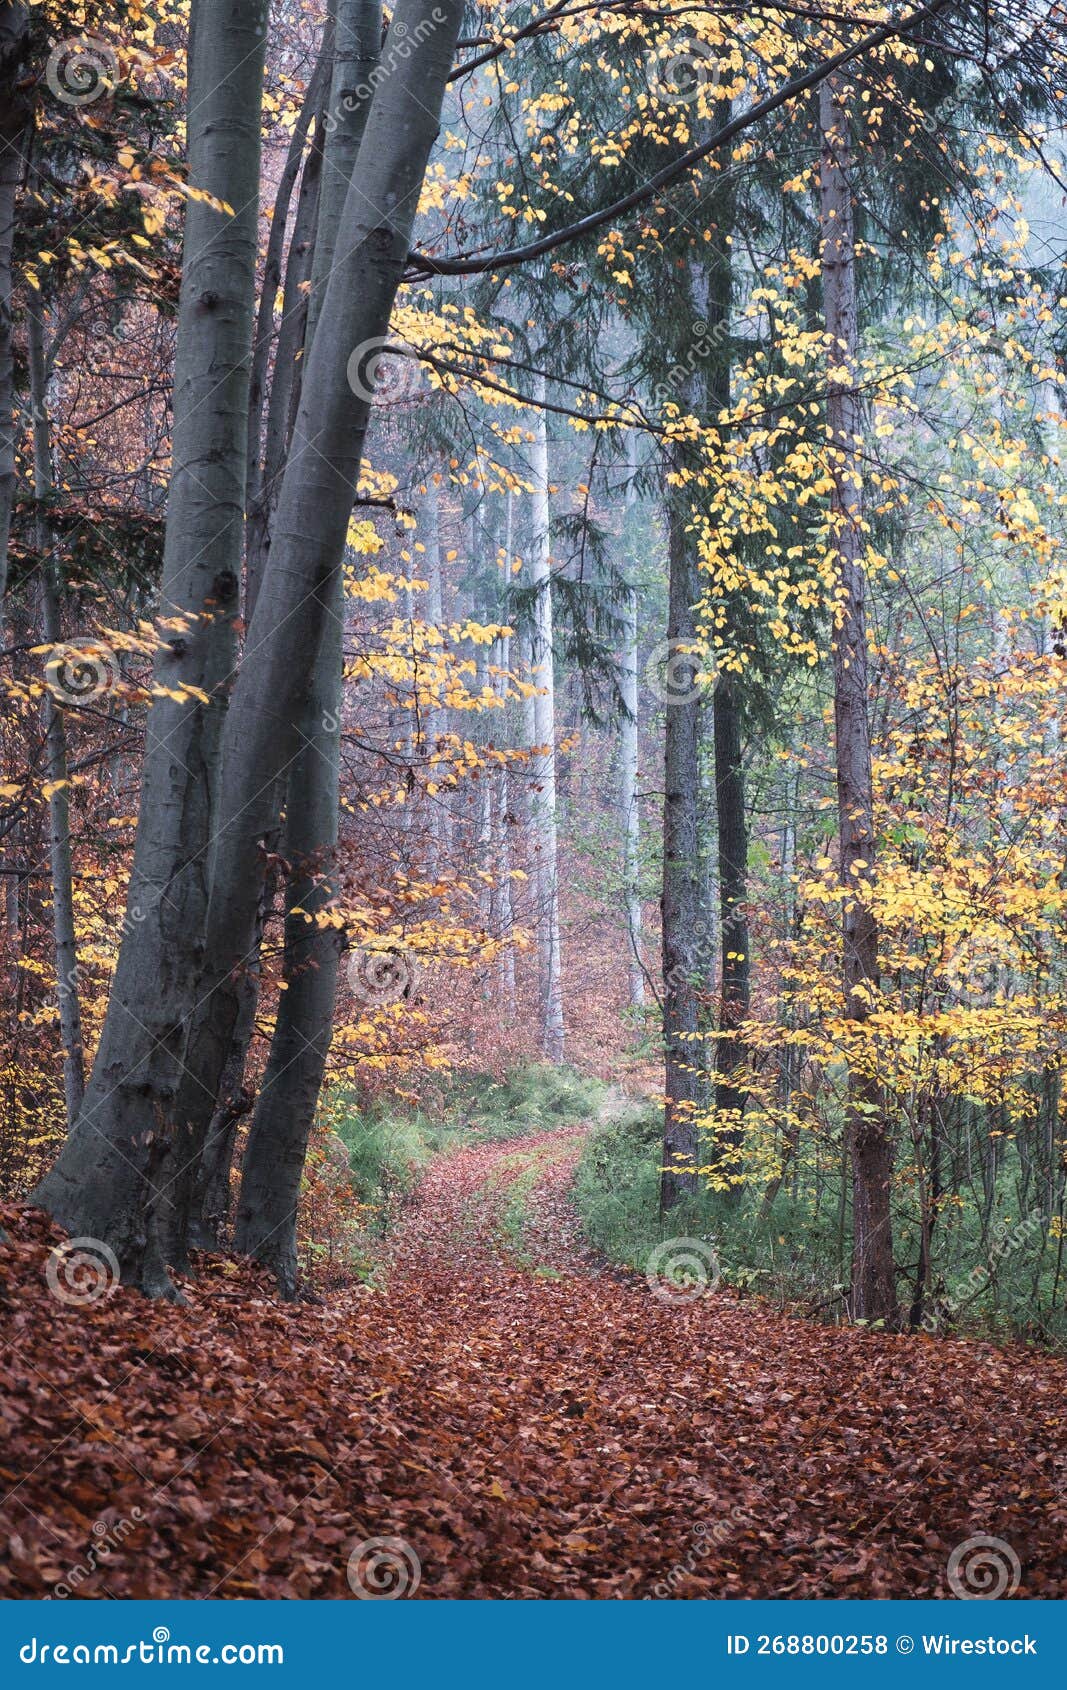 Forest with Dense Autumn Trees Stock Photo - Image of dense, season ...